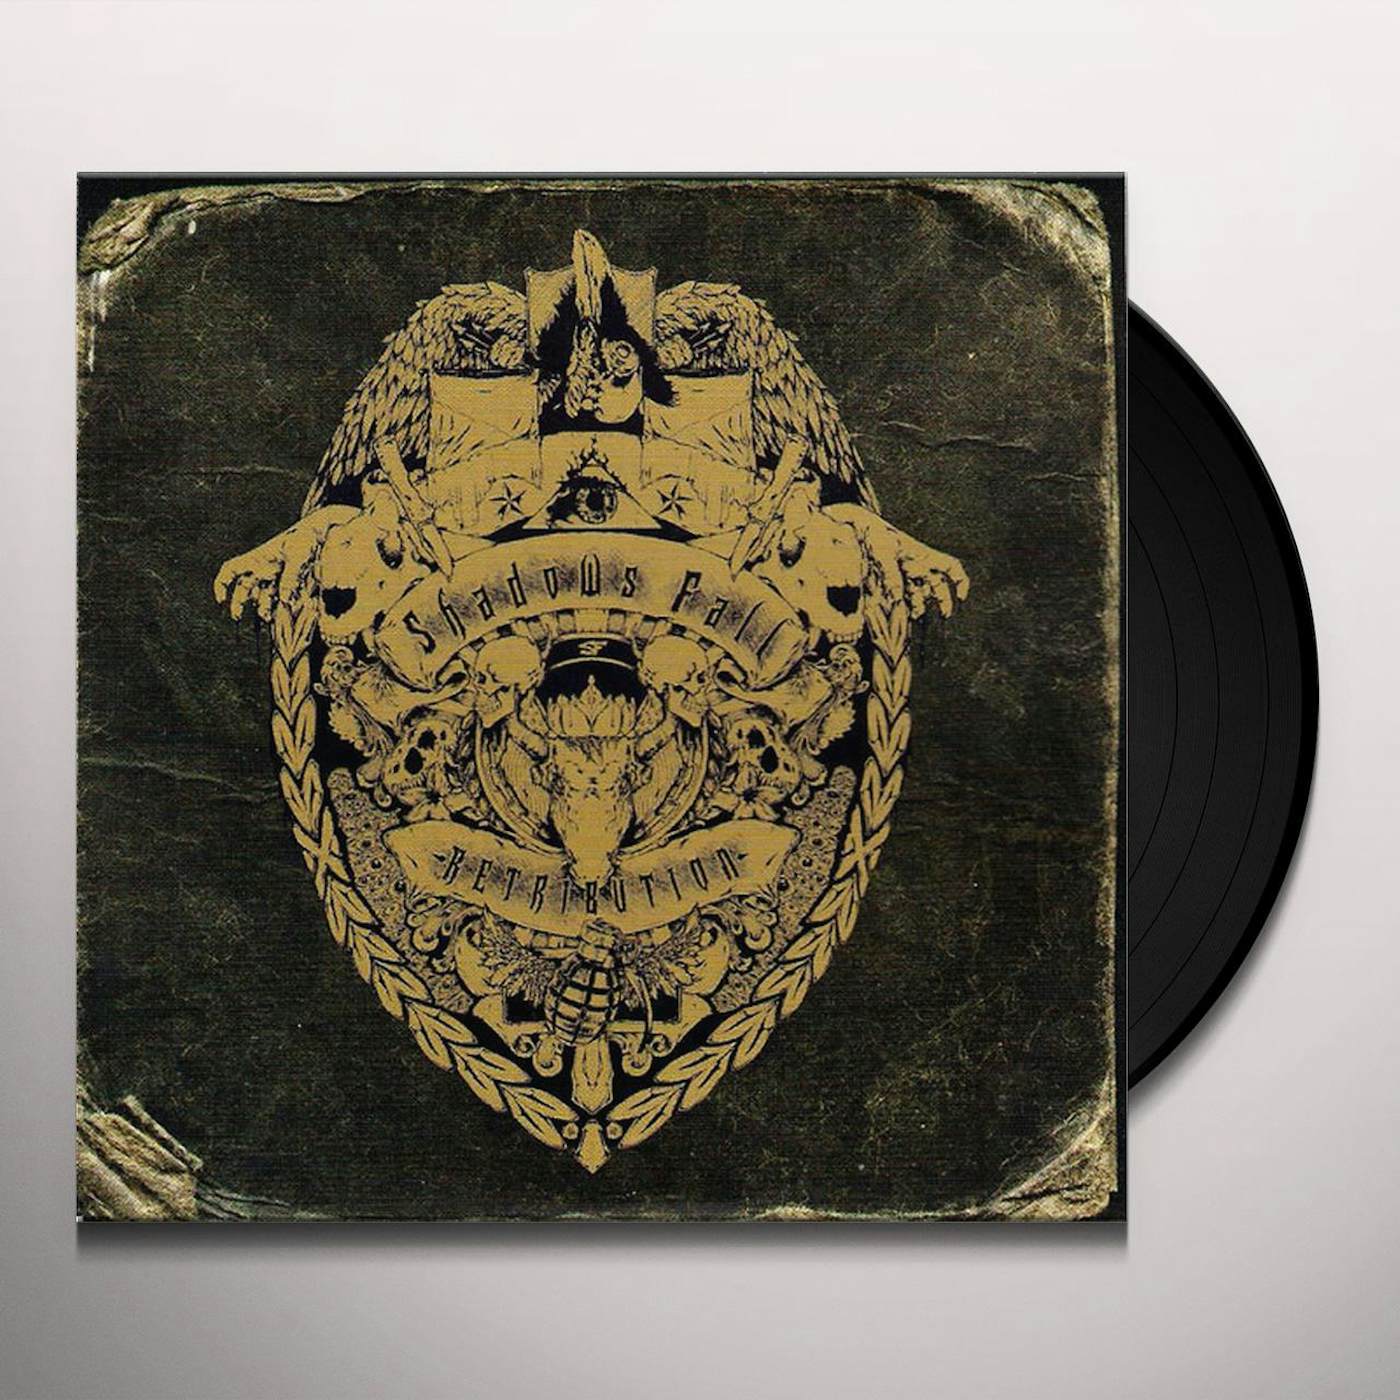 Shadows Fall Retribution Vinyl Record